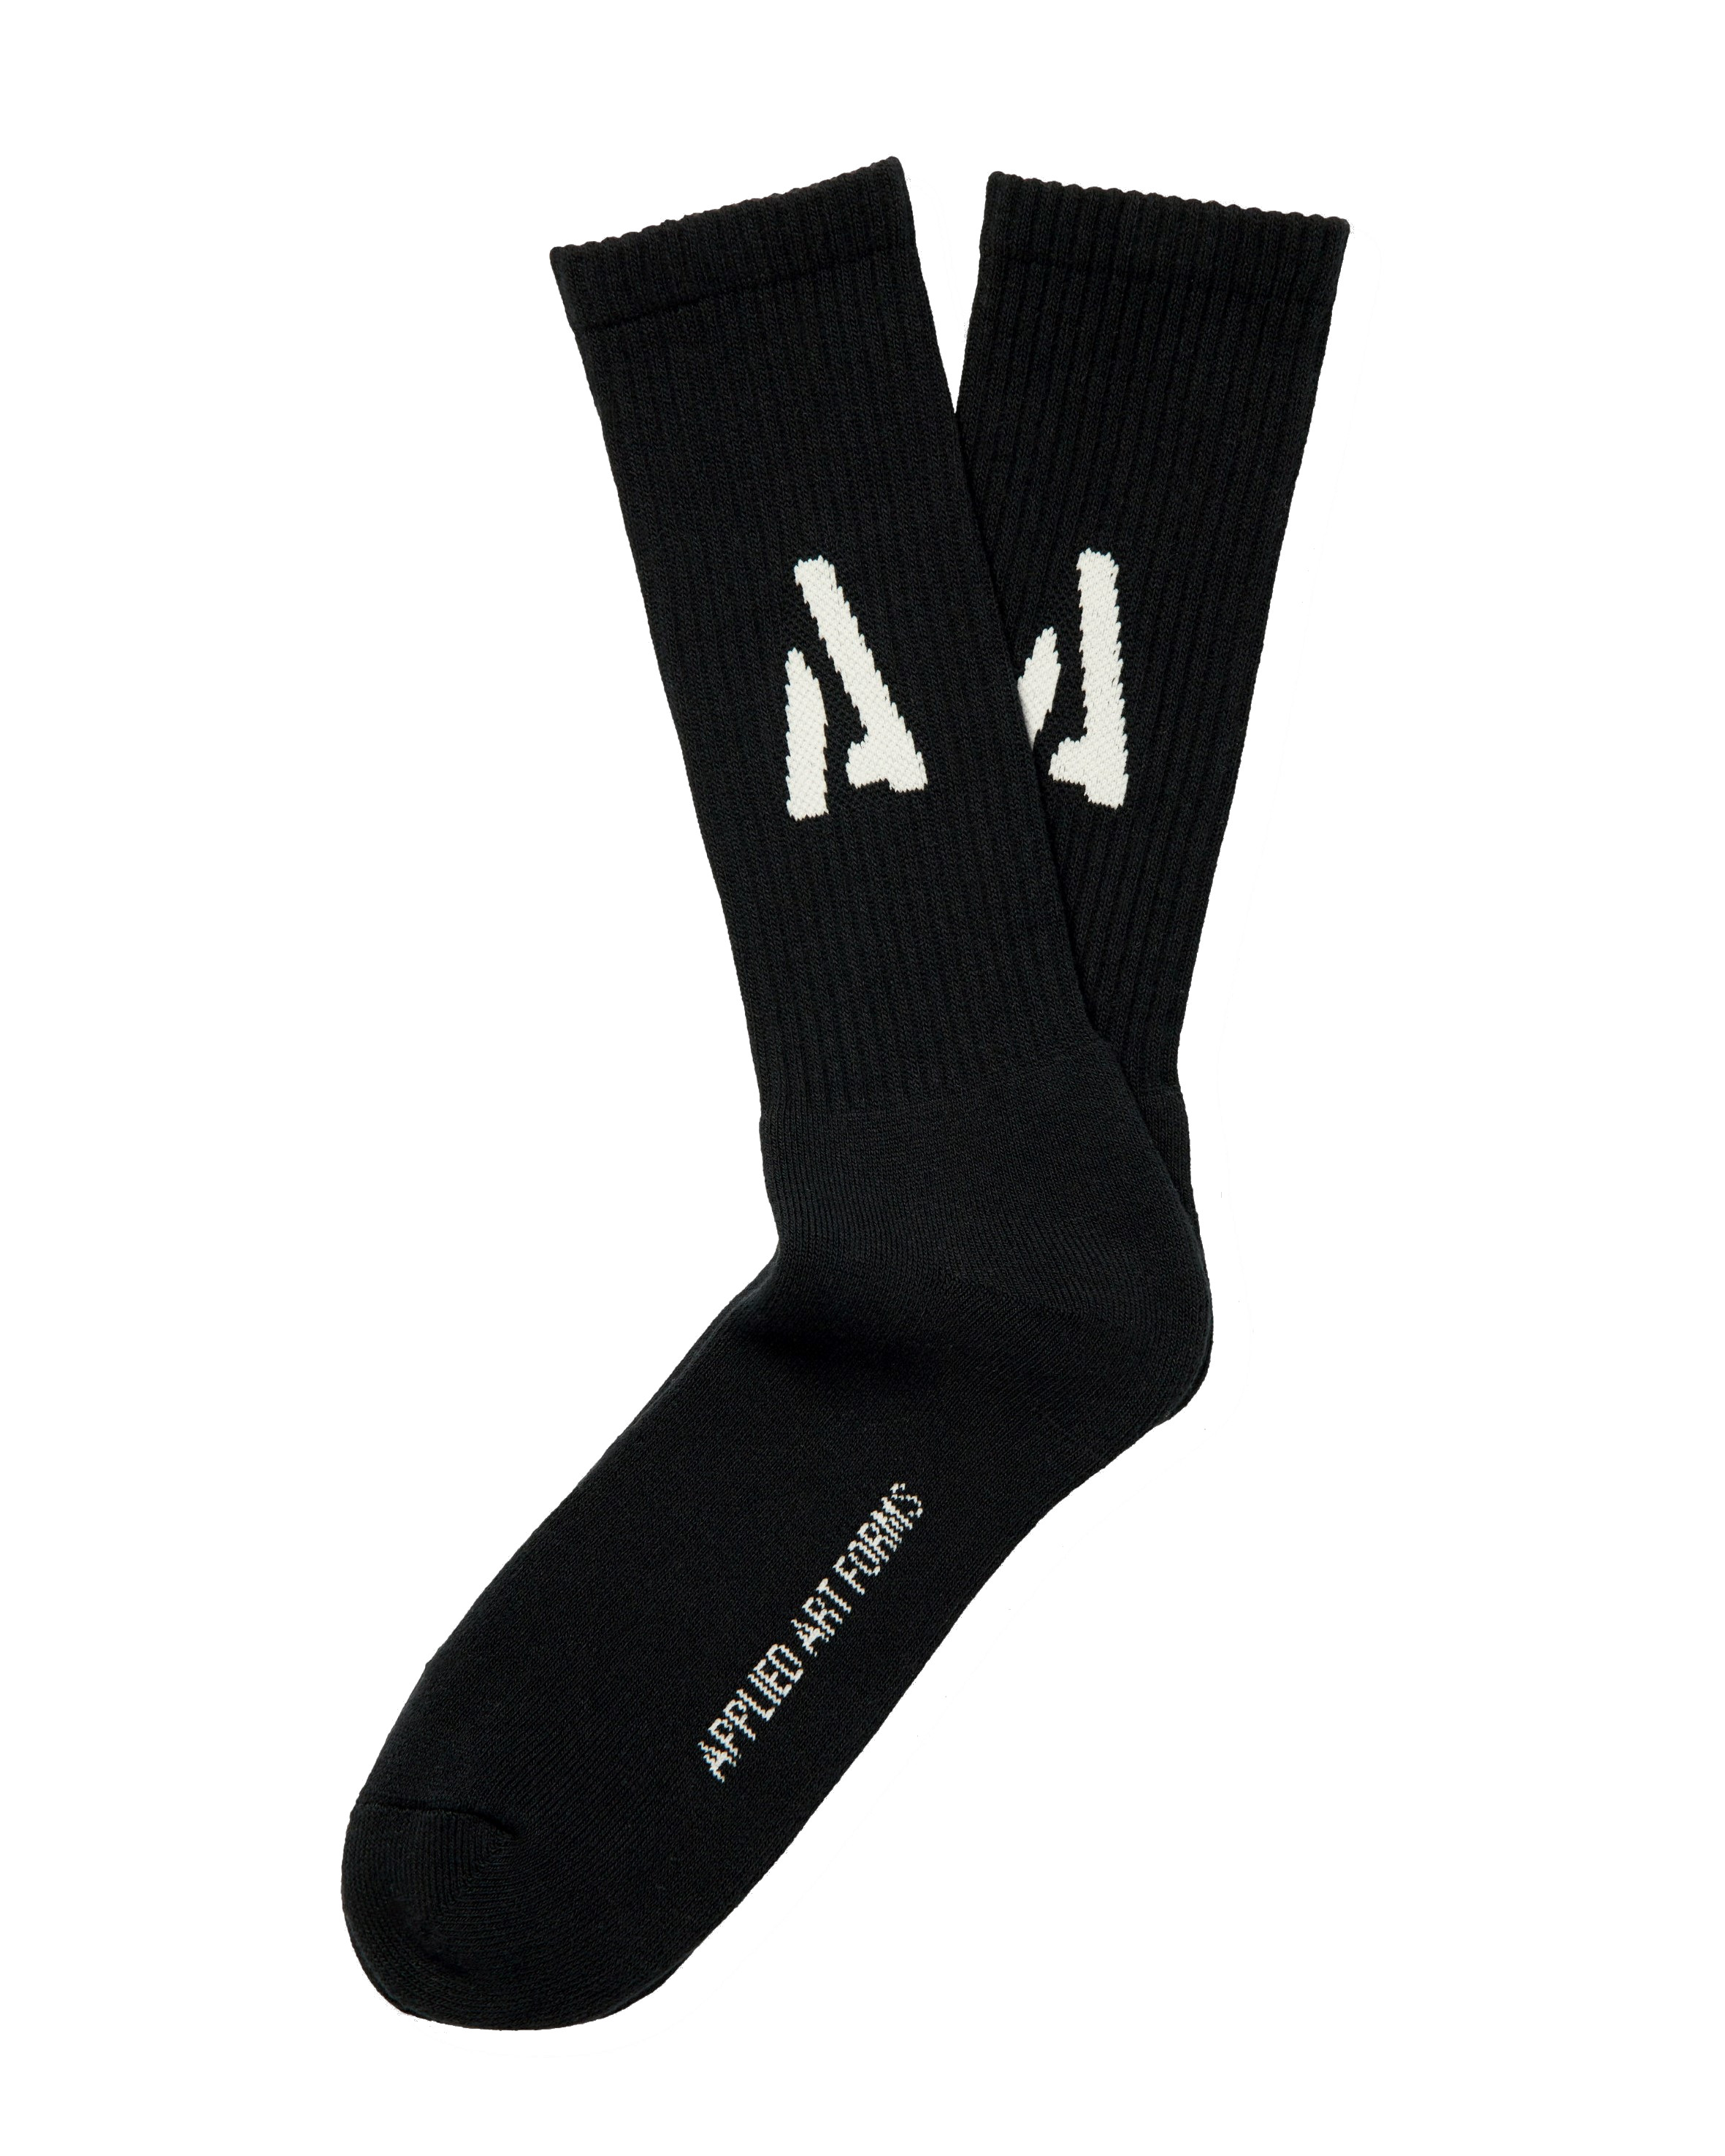 APPLIED ART FORMS Heavyweight Socks in Black 44-46